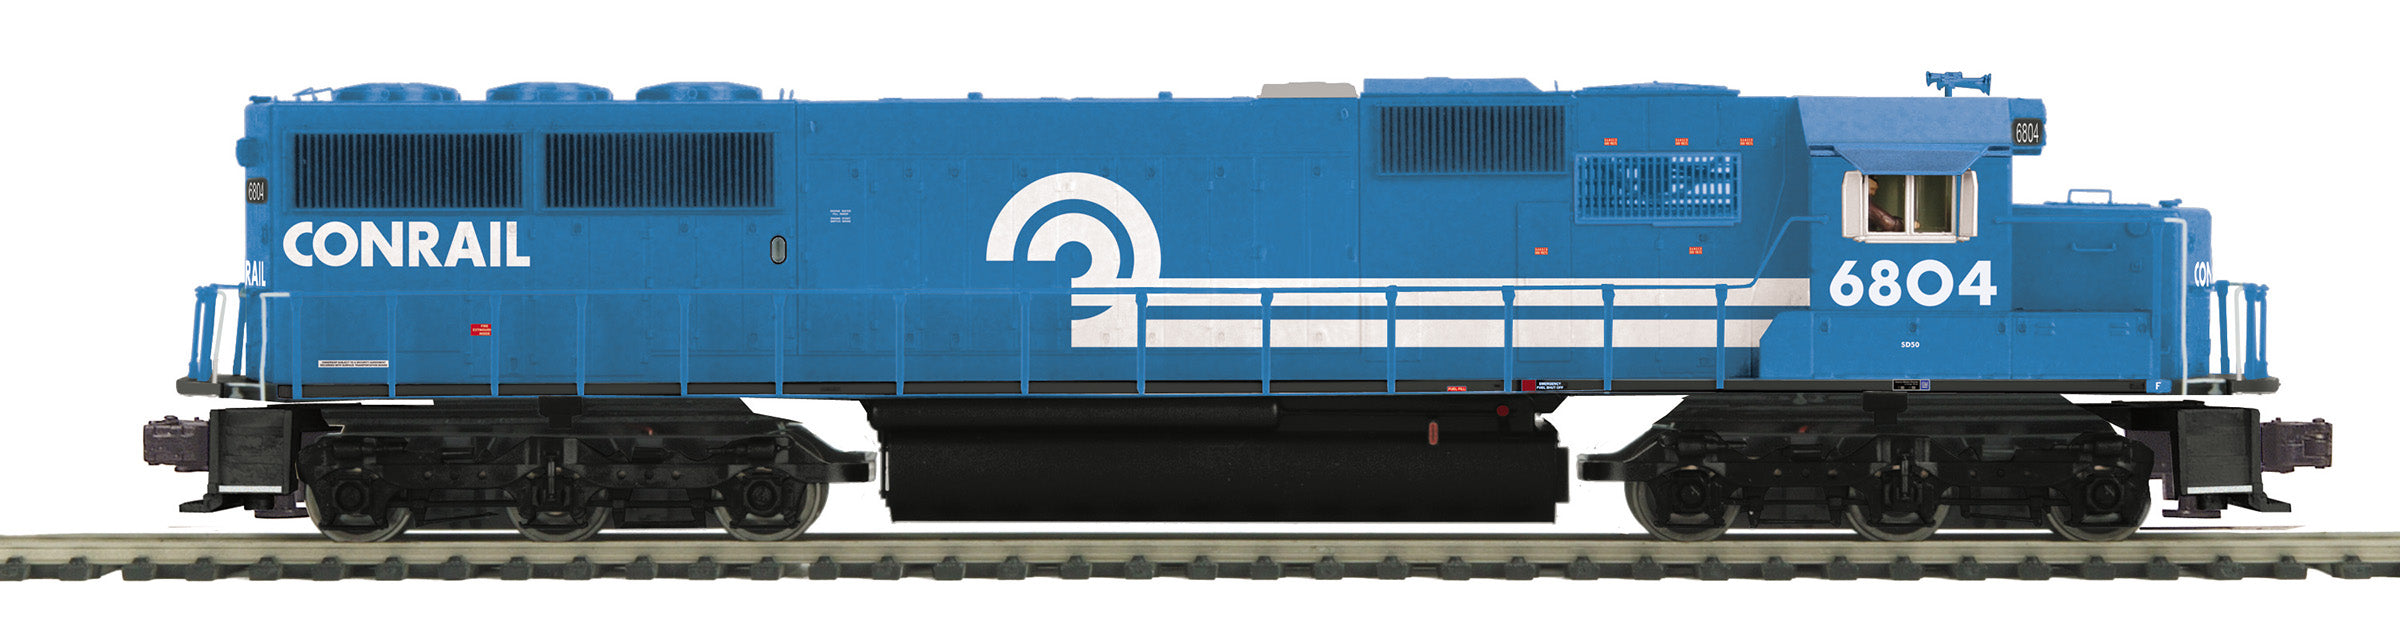 MTH 20-21903-1 - SD50 Diesel Engine "Conrail" #6804 w/ PS3